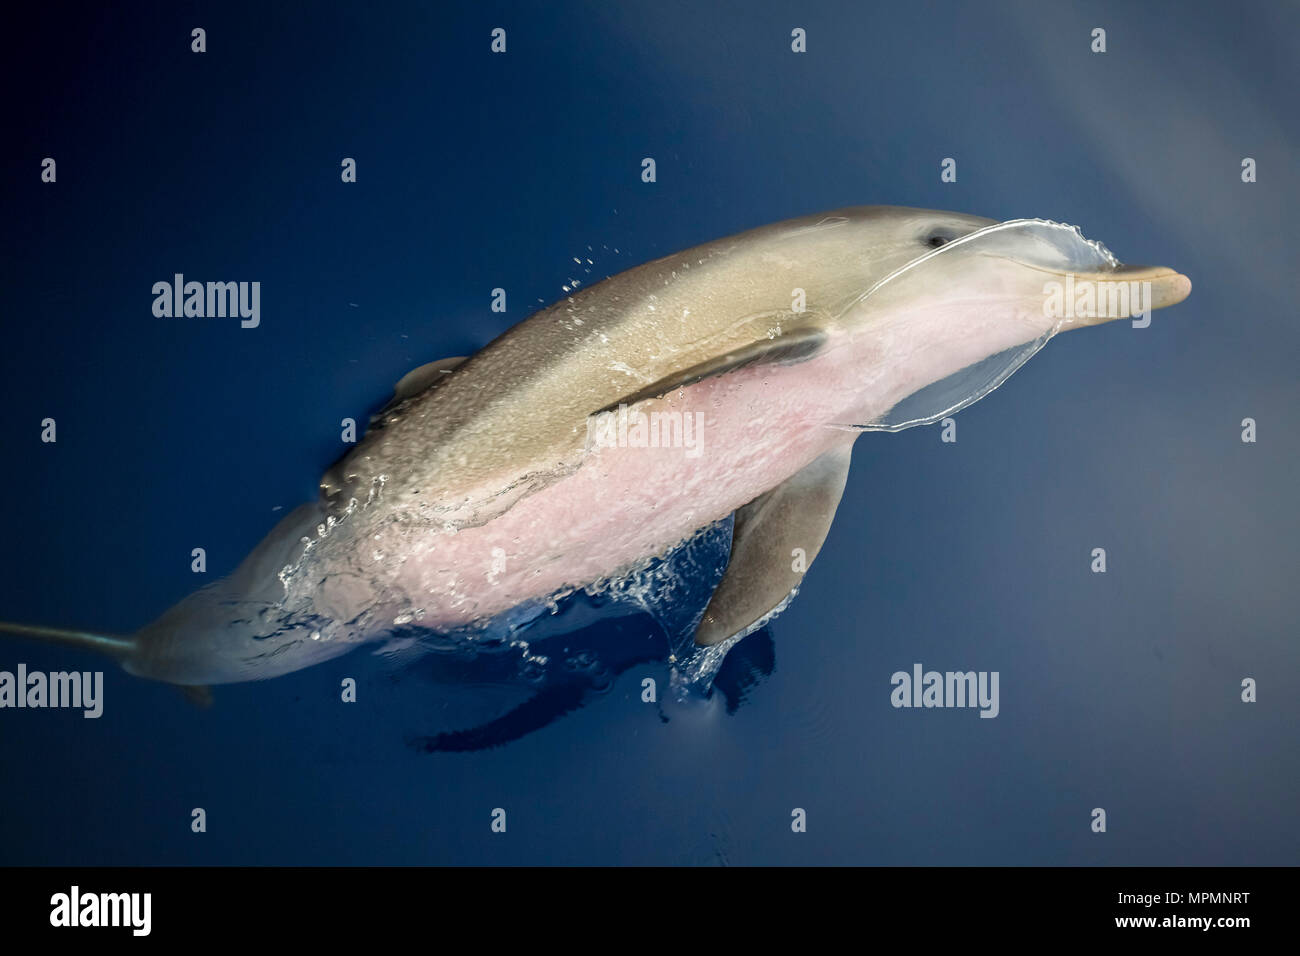 Indo-pacifico delfino maggiore, Tursiops aduncus, bow-equitazione, Chichi-jima, Bonin Isole Isole Ogasawara, Giappone, Oceano Pacifico Foto Stock